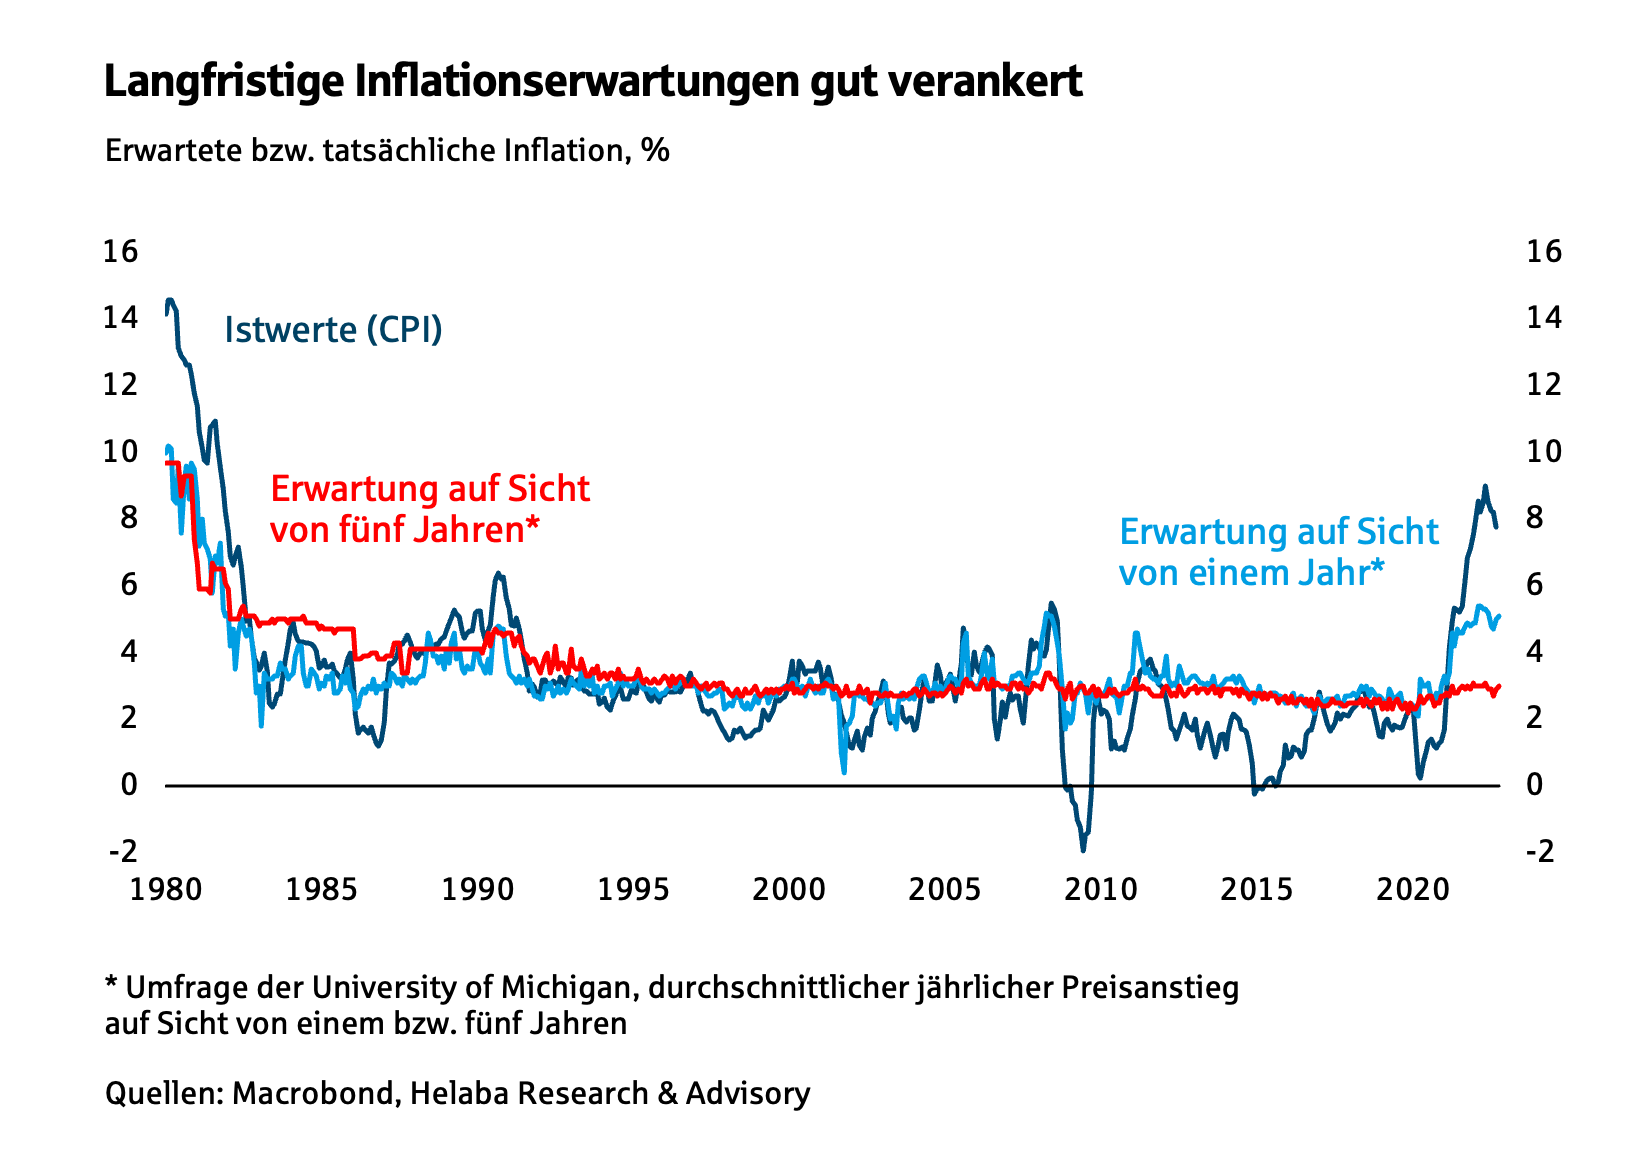 Langfristige Inflationserwartung gut verankert